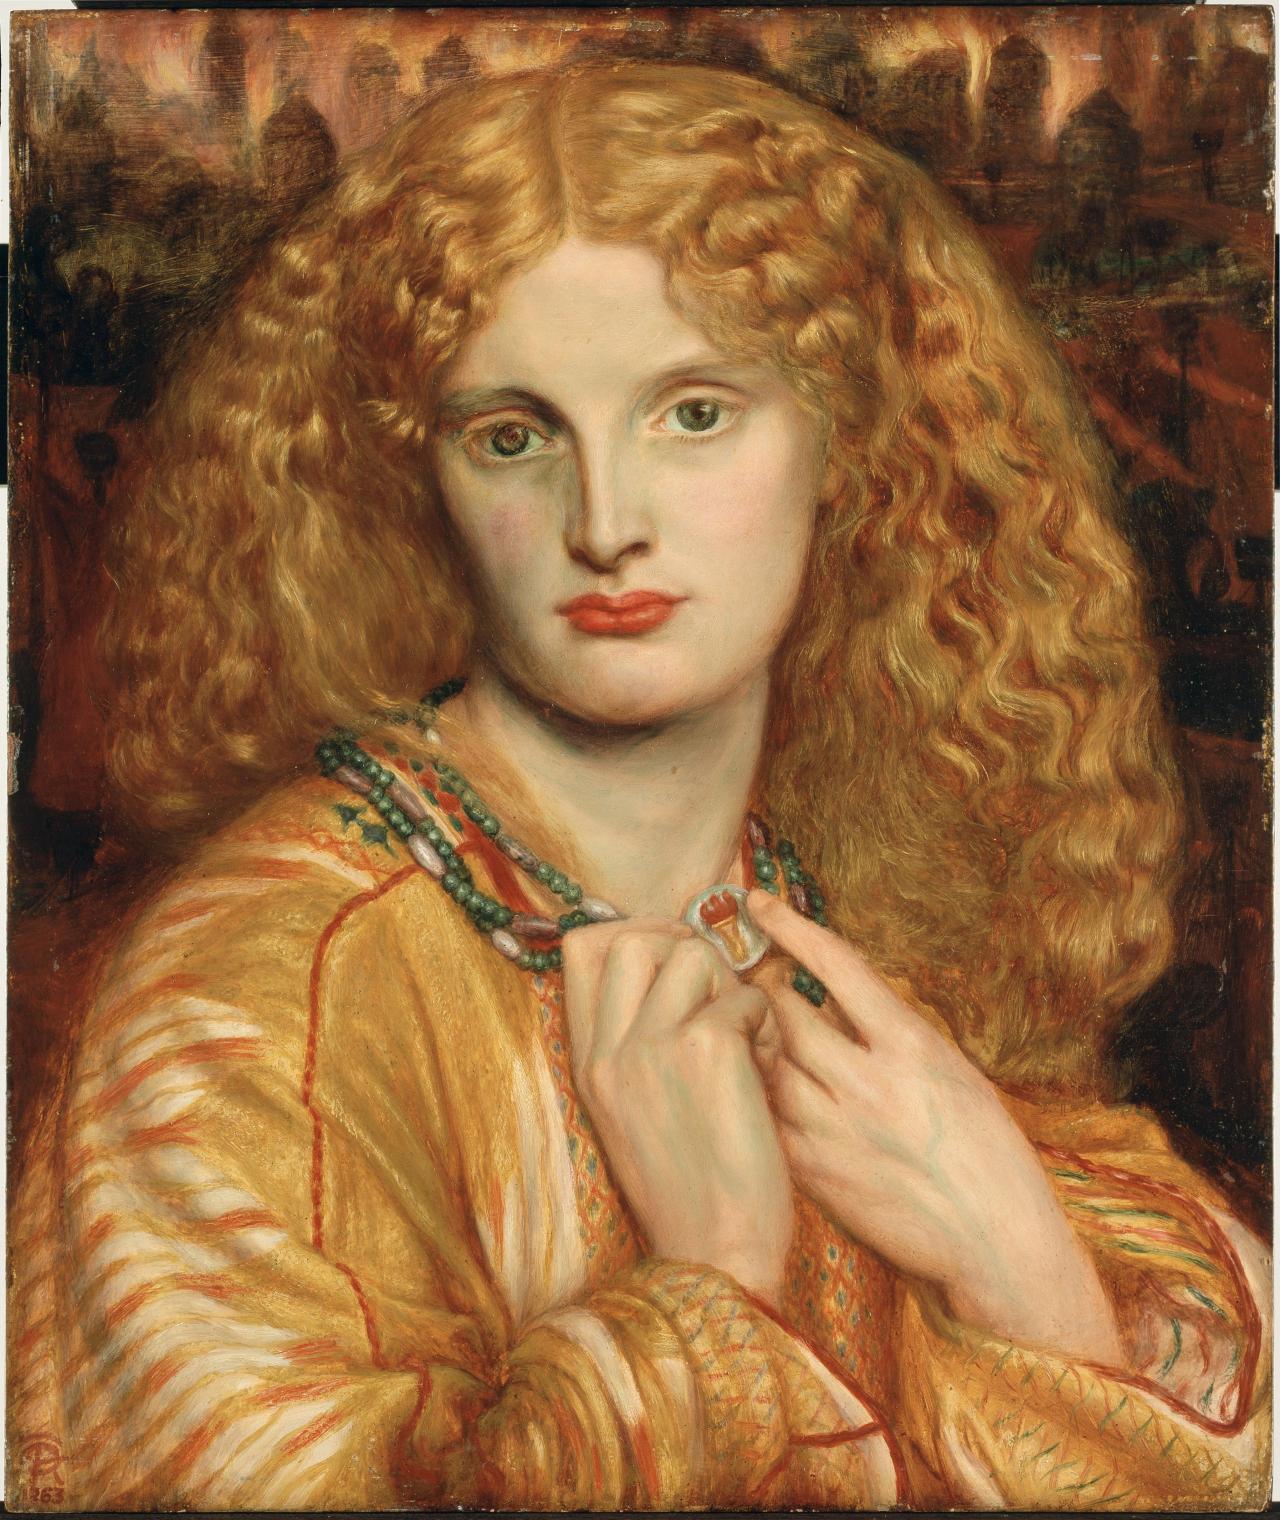 Ölgemälde, das das Portrait einer jungen Frau mit orangenem Haar, roten Lippen, orangenem Oberteil und einer grünen Perlenkette um den Hals zeigt. Das gesamte Bild ist bis auf die Perlenkette in Orange gehalten.